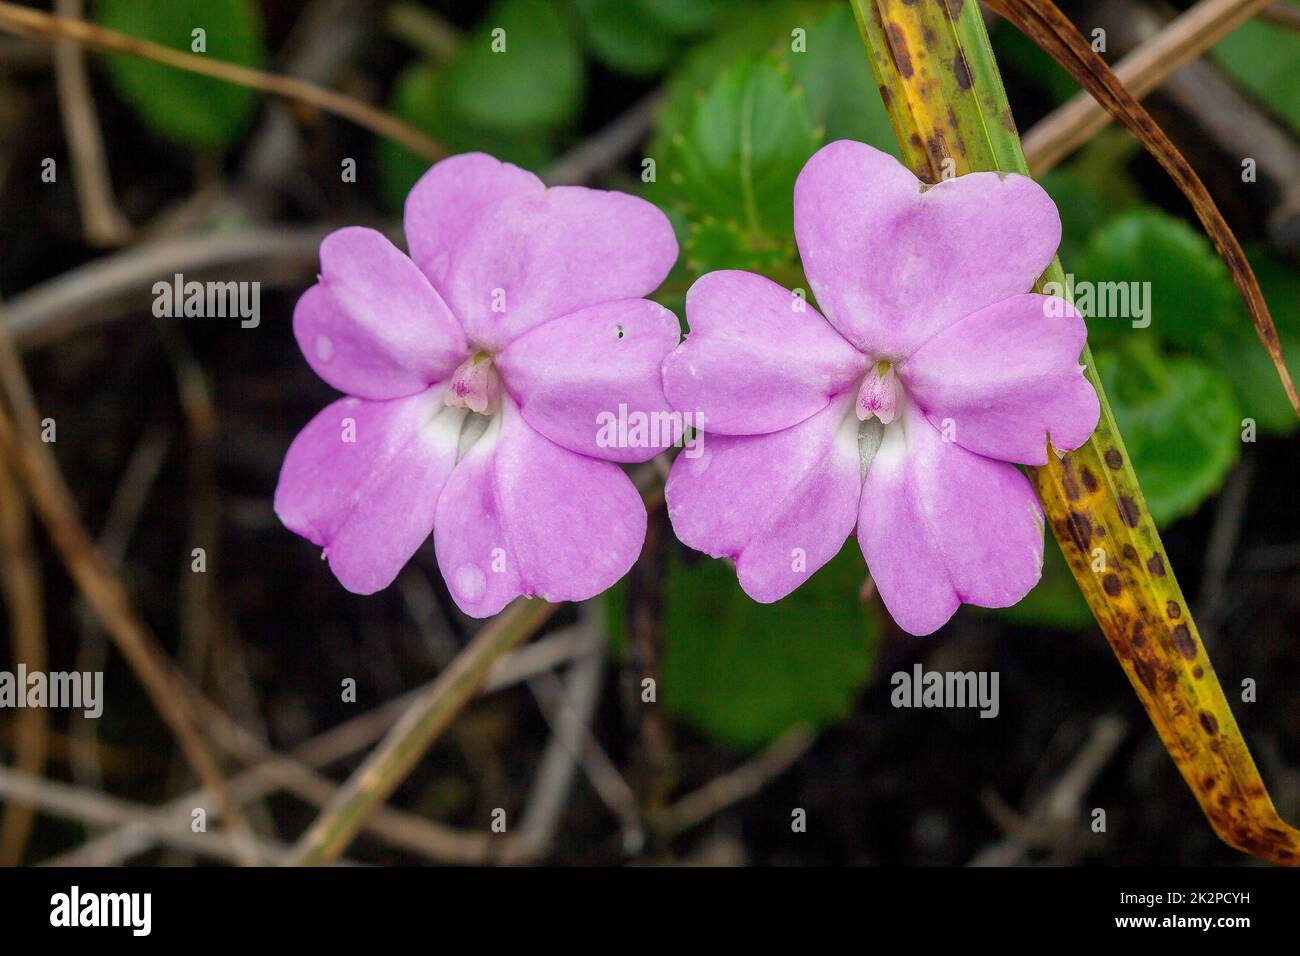 Impatiens violiflora dans la nature, fleurs violettes roses une seule plante ou en paires est une plante herbacée d'une hauteur maximale de 50 centimètres Banque D'Images